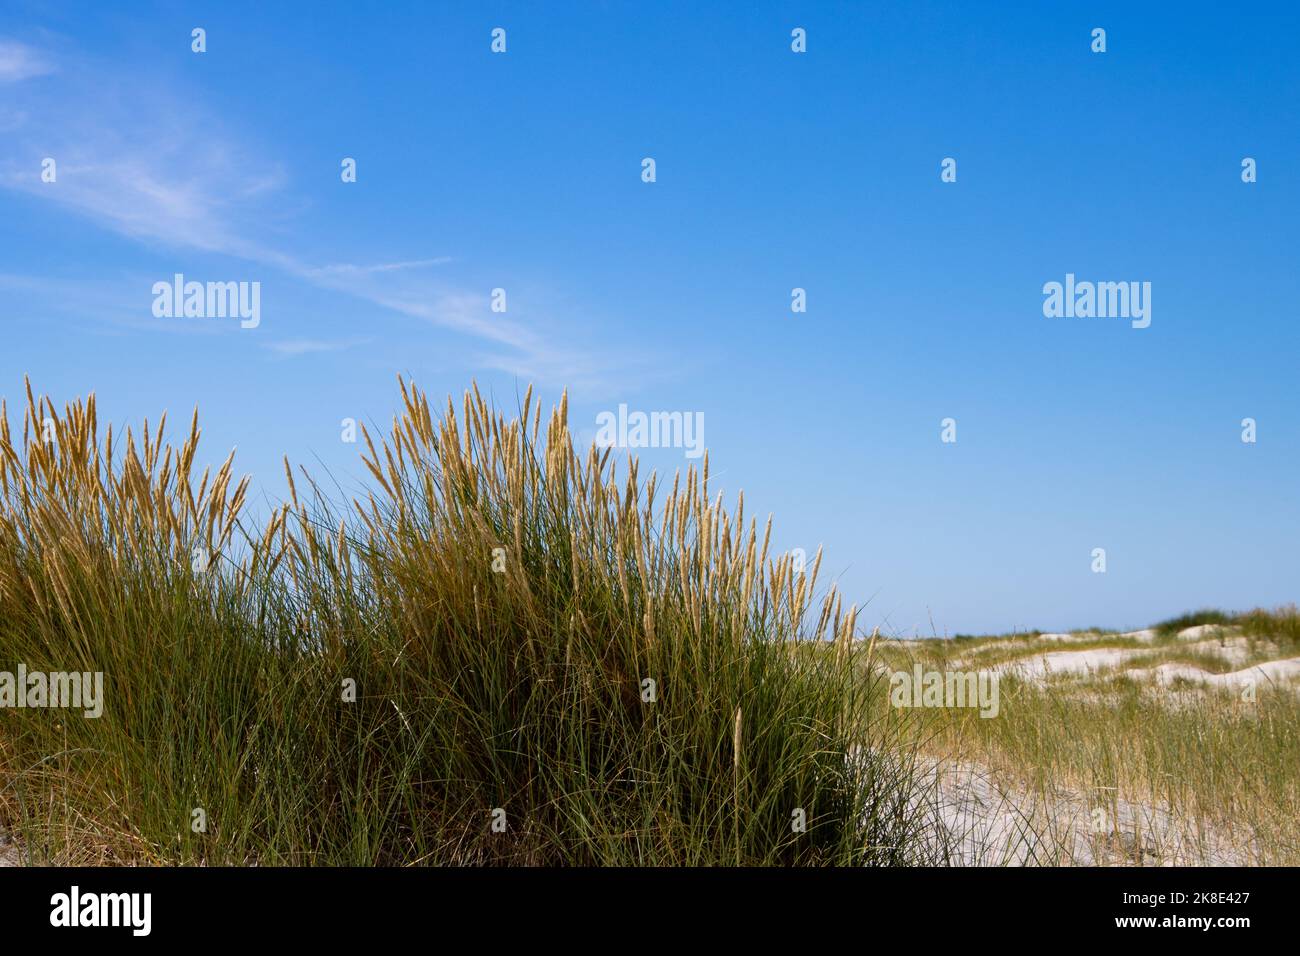 Gros plan de la plage ou de l'herbe de maram, également appelé Ammophila arenaria ou Strandhafer Banque D'Images